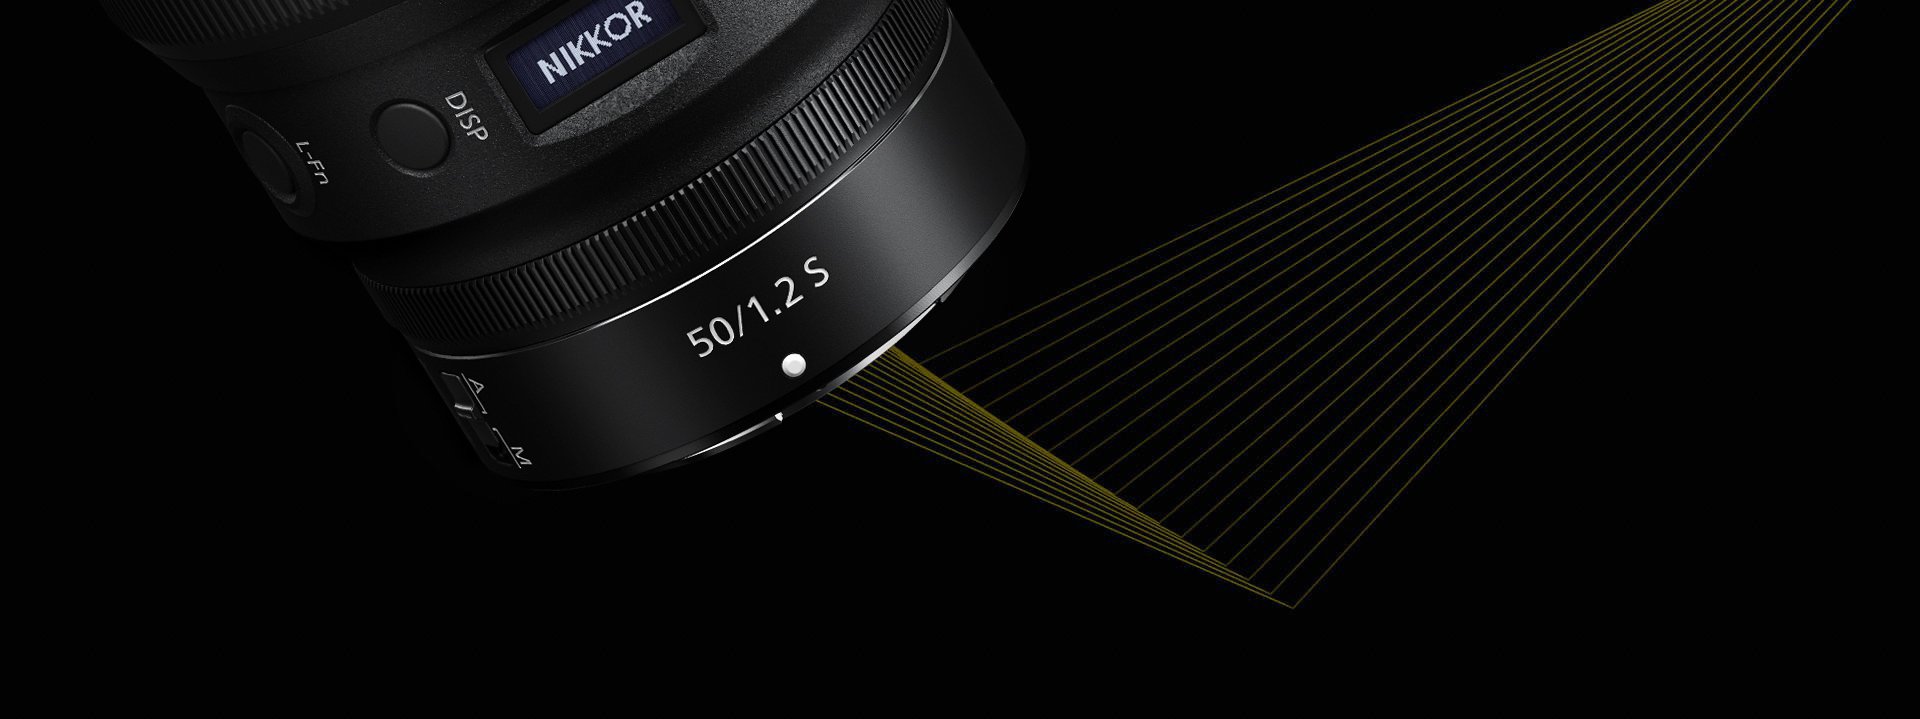 Maggiori informazioni su "Nuovo Nikkor Z 50mm f/1.2 S"